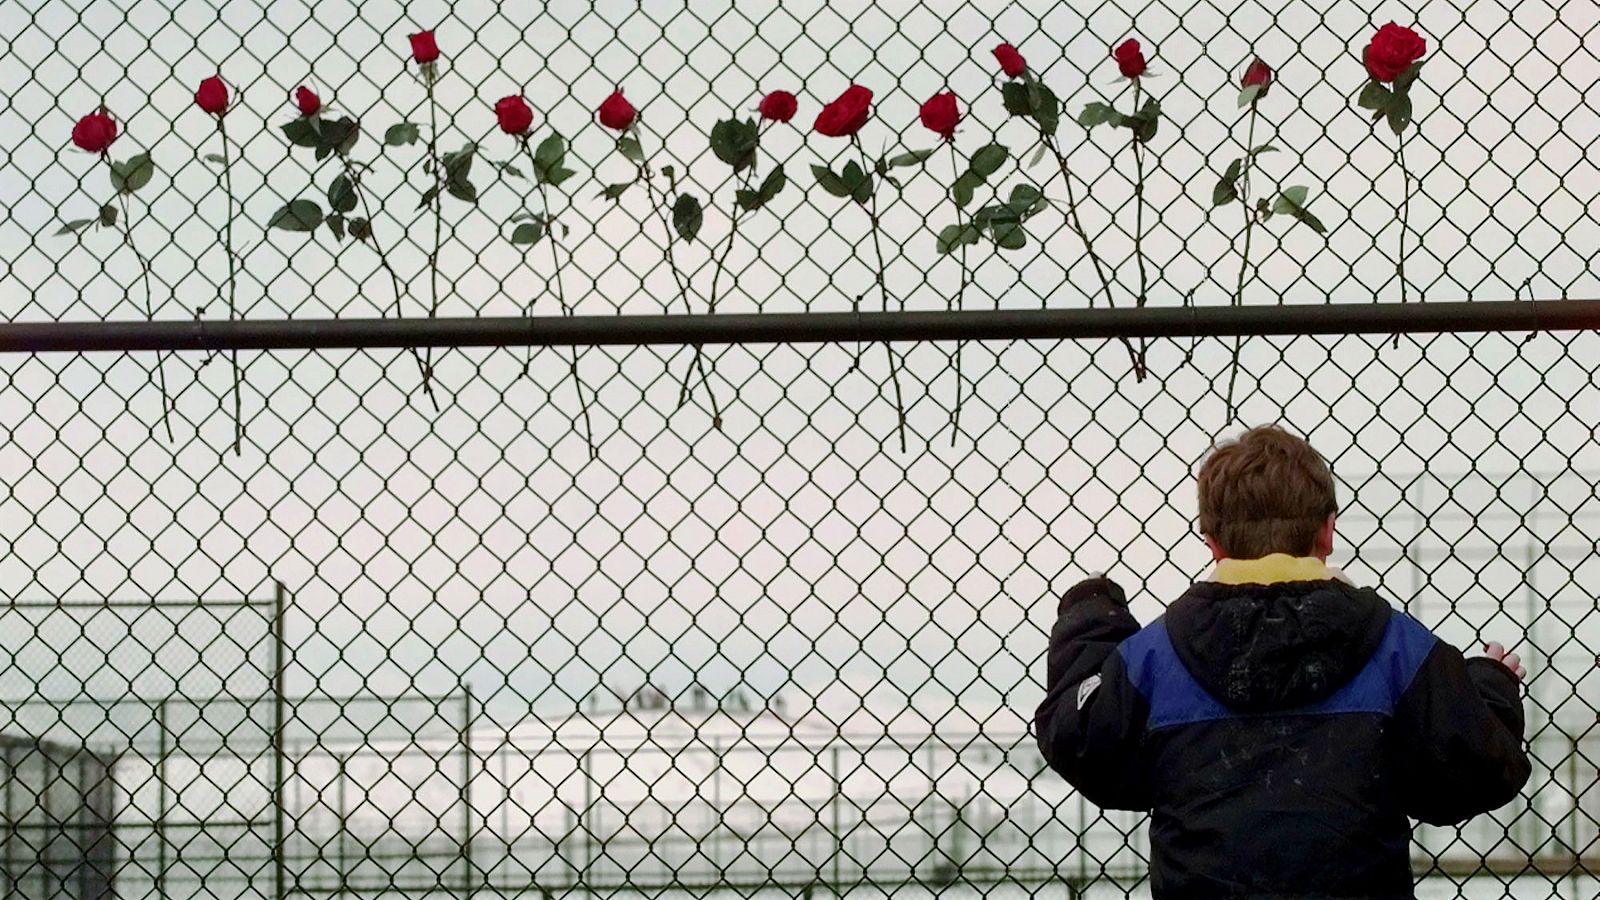 25 años de la masacre de Columbine, el tiroteo que abrió el debate sobre las armas en EE.UU.